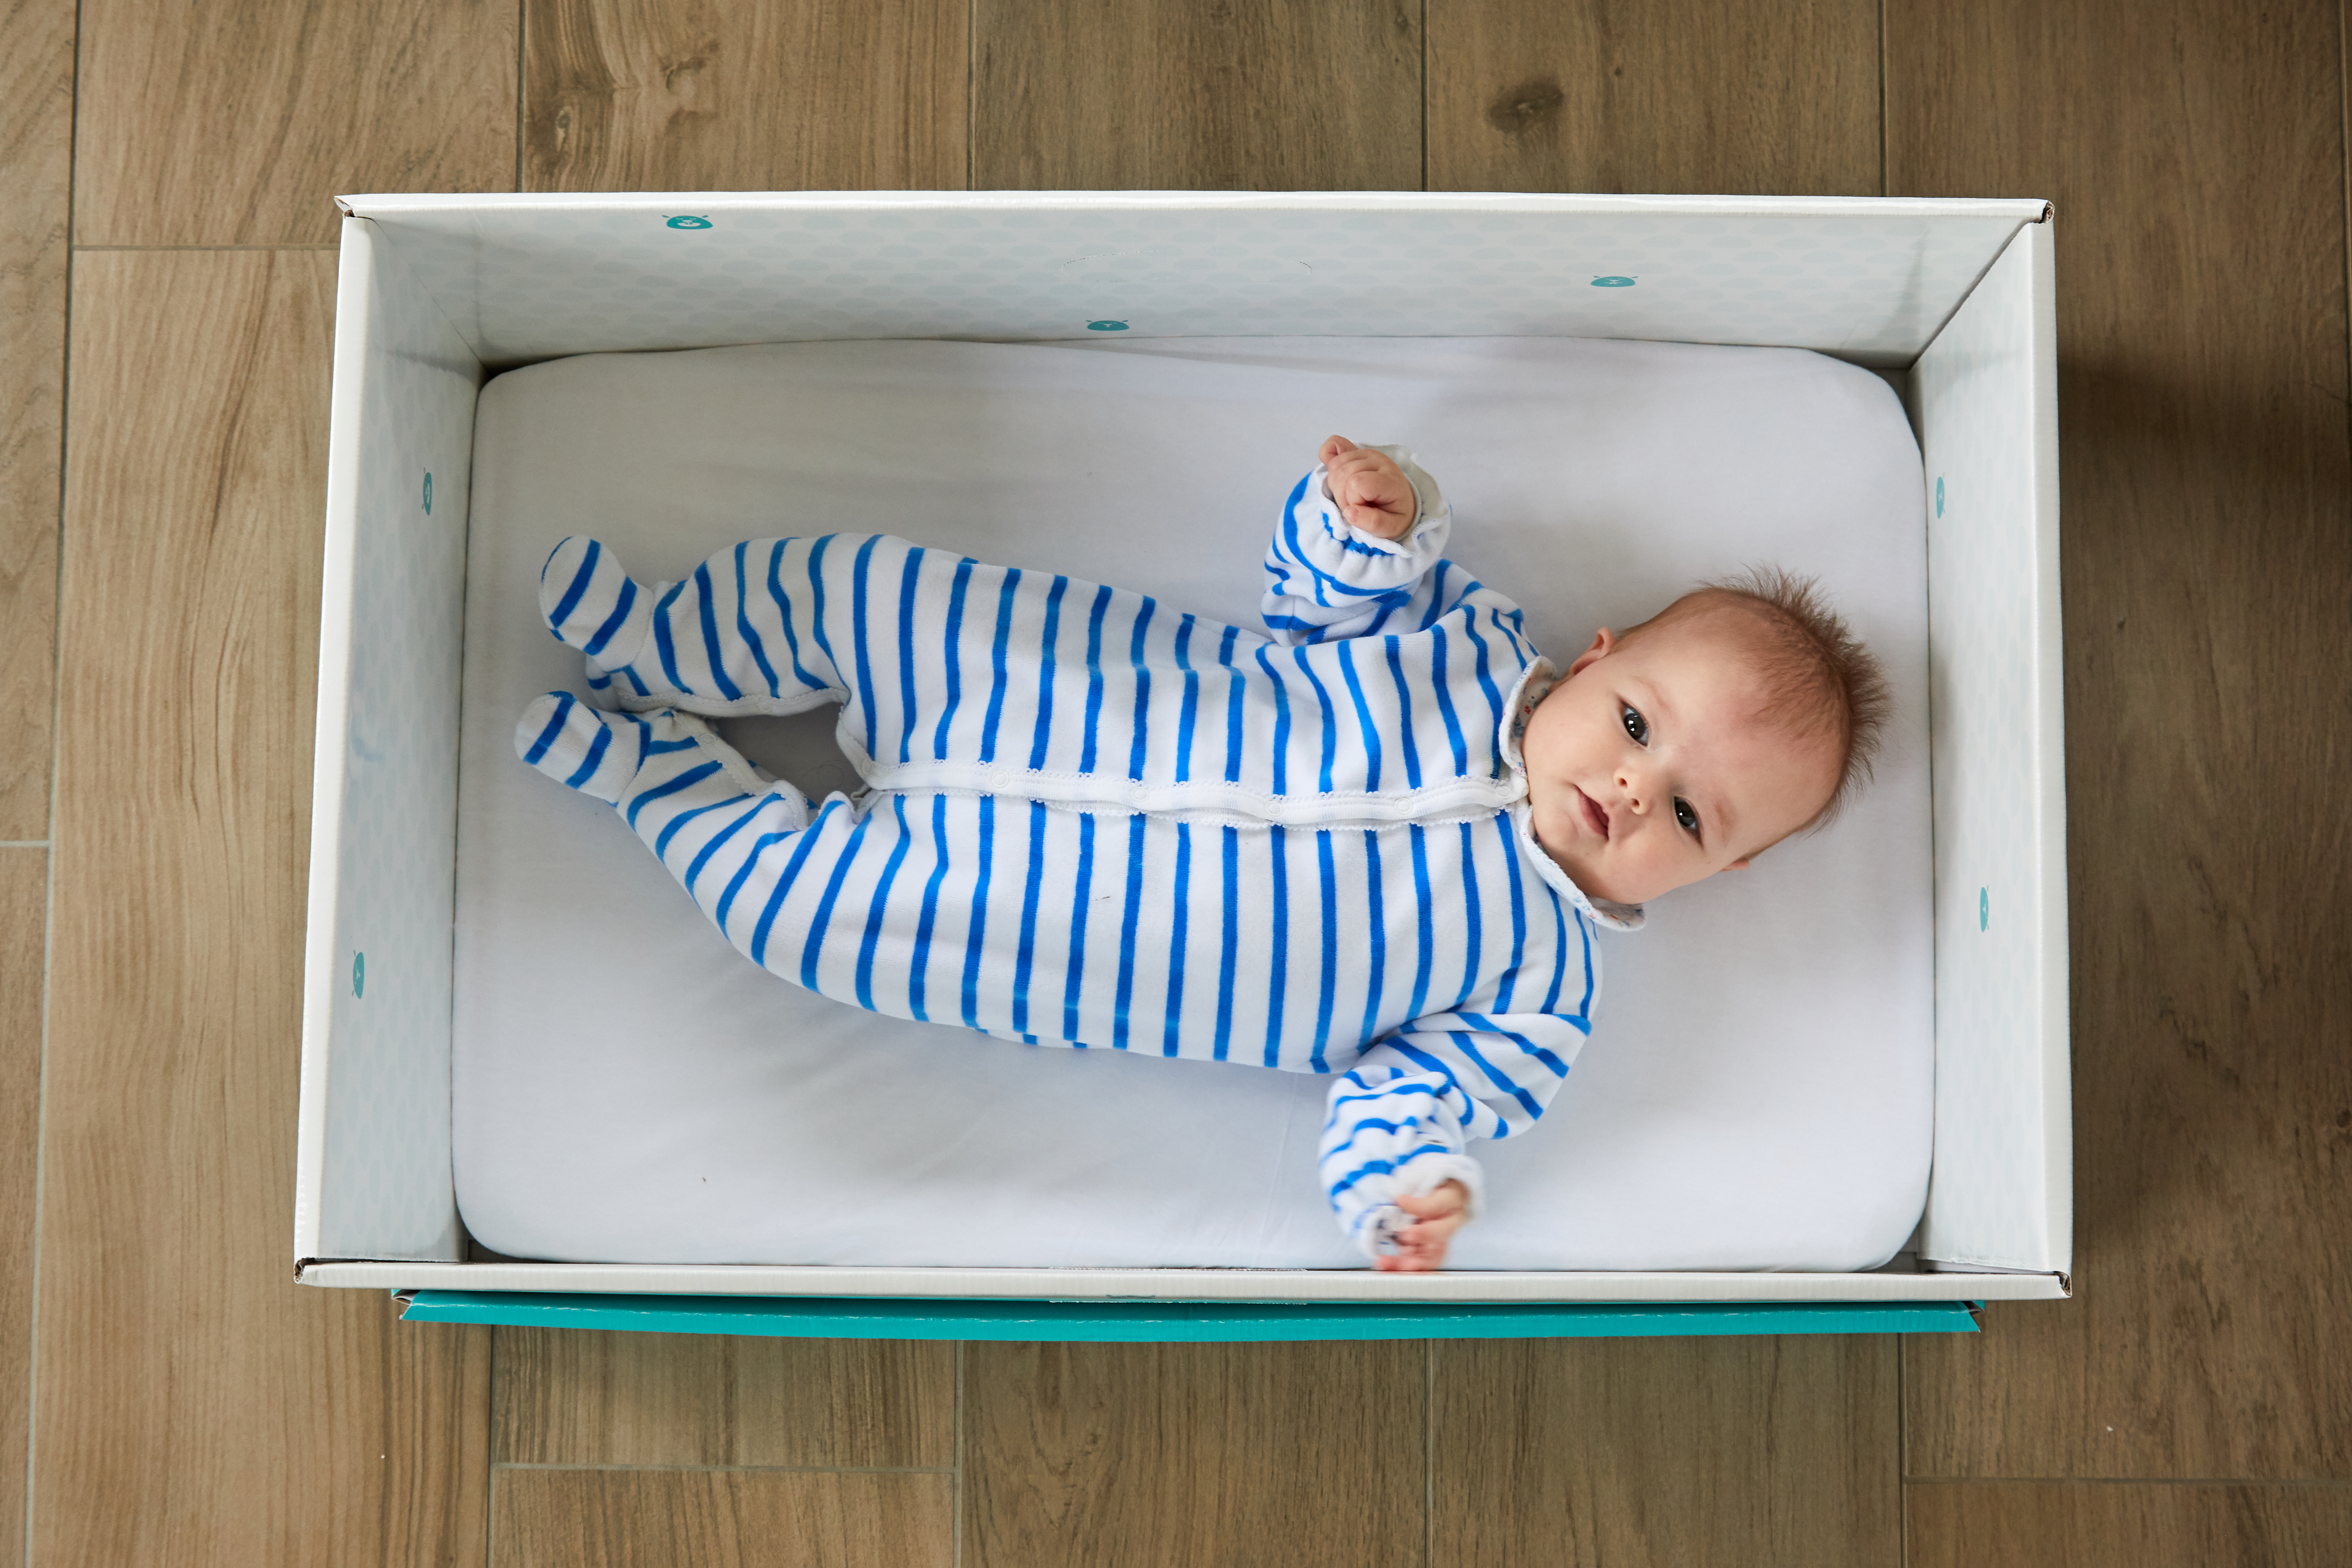 Baby Box’: la boite de naissance qui s'engage pour le droit à l'identité de chaque enfant